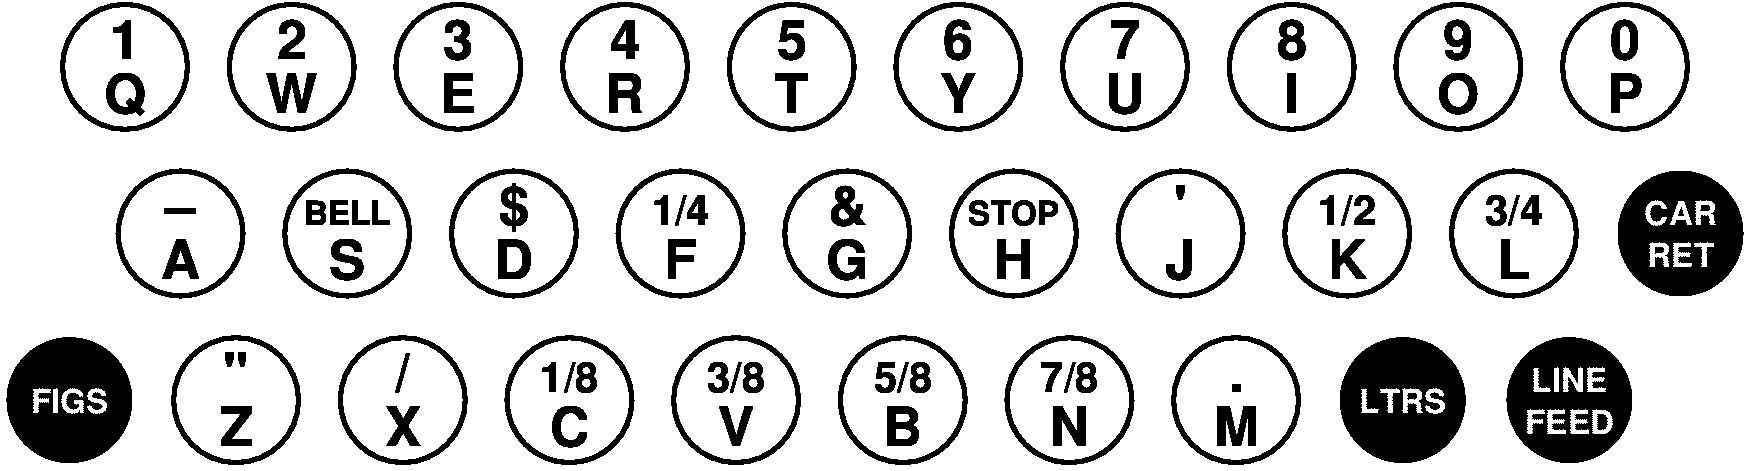 「Teletype Model 15」のキー配列